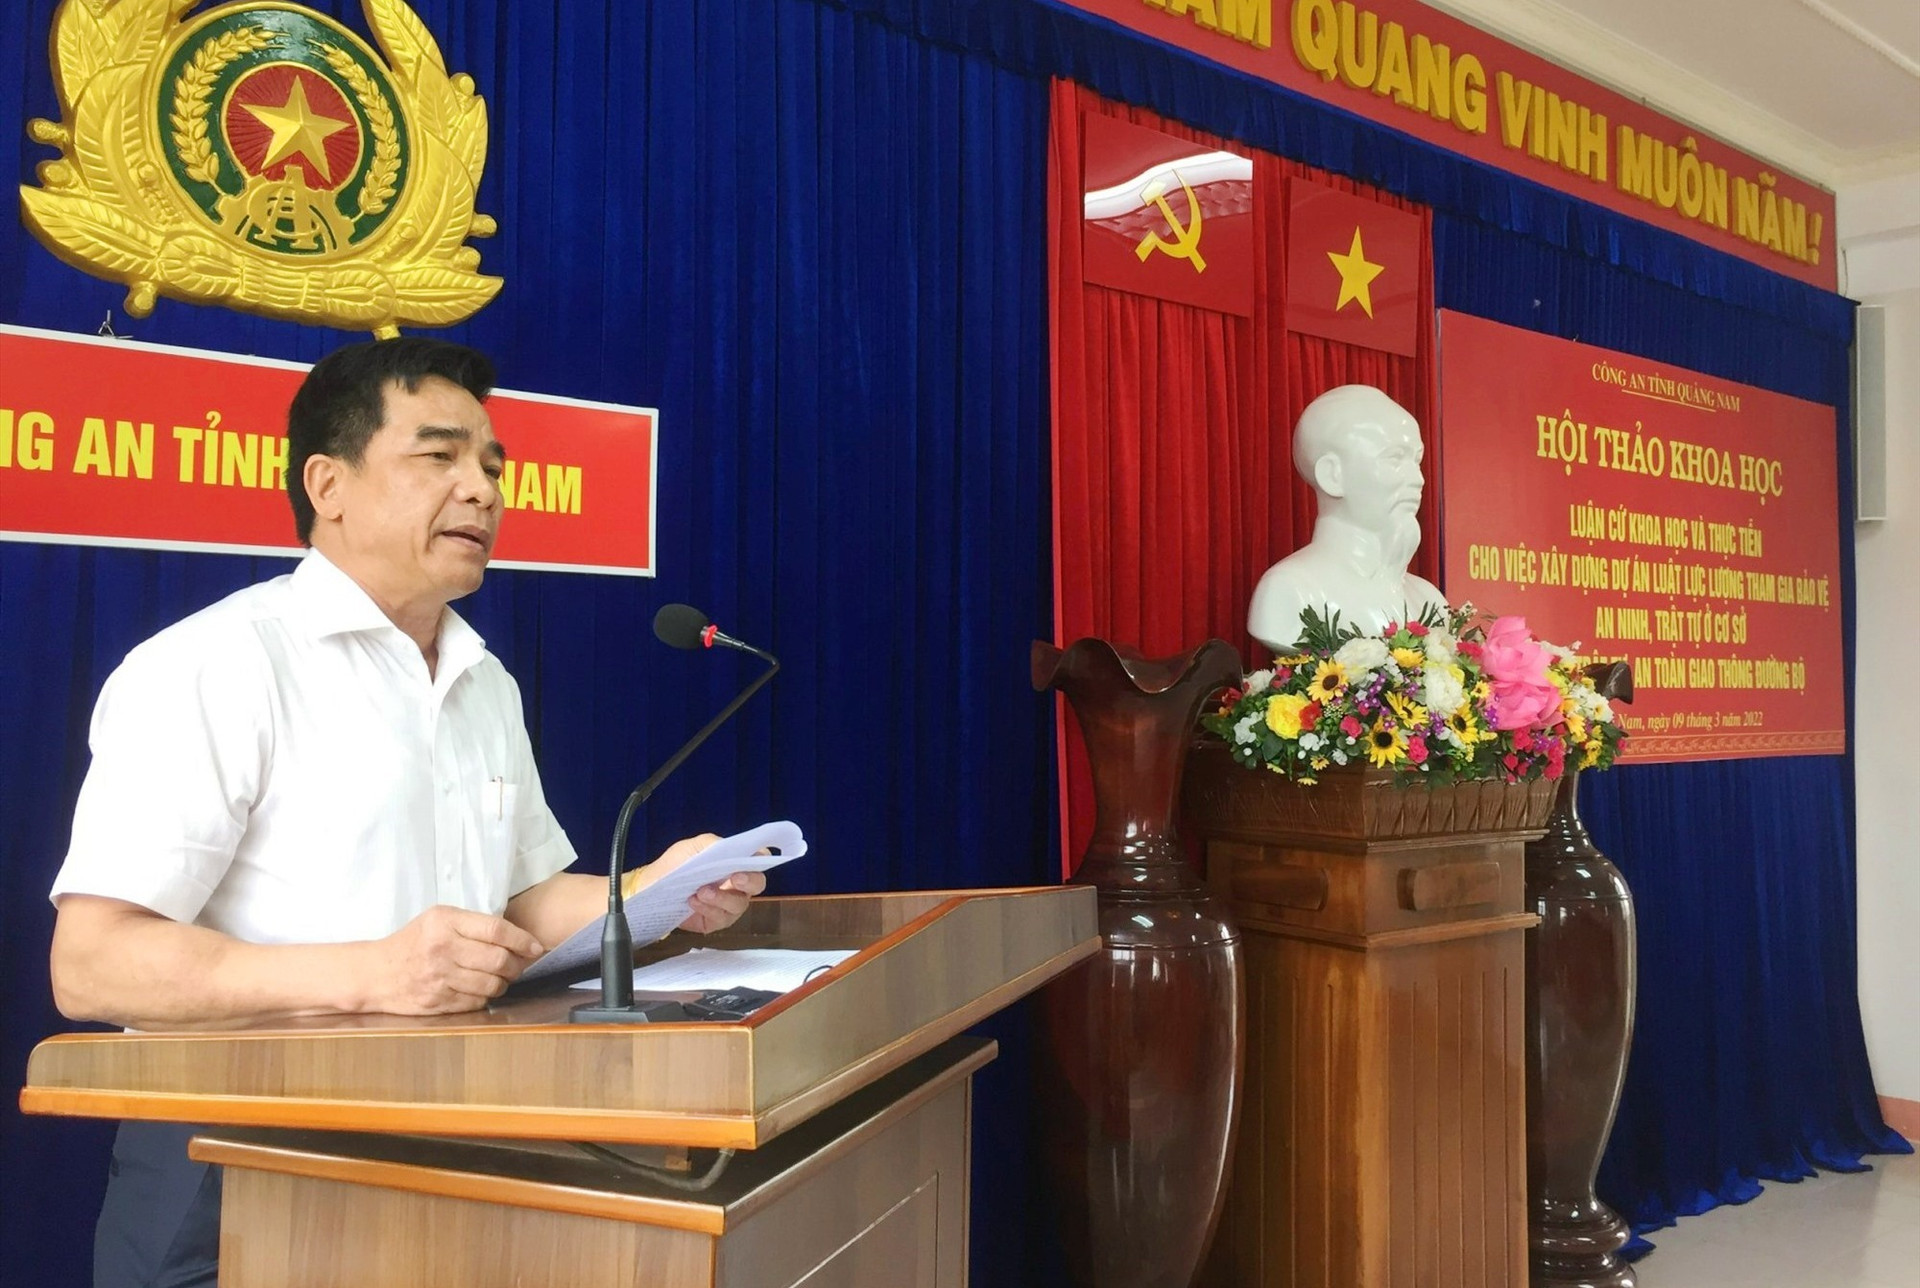 Đồng chí Lê Văn Dũng, Phó Bí thư thường trực Tỉnh ủy, Trưởng Đoàn đại biểu Quốc hội tỉnh Quảng Nam phát biểu tại Hội thảo